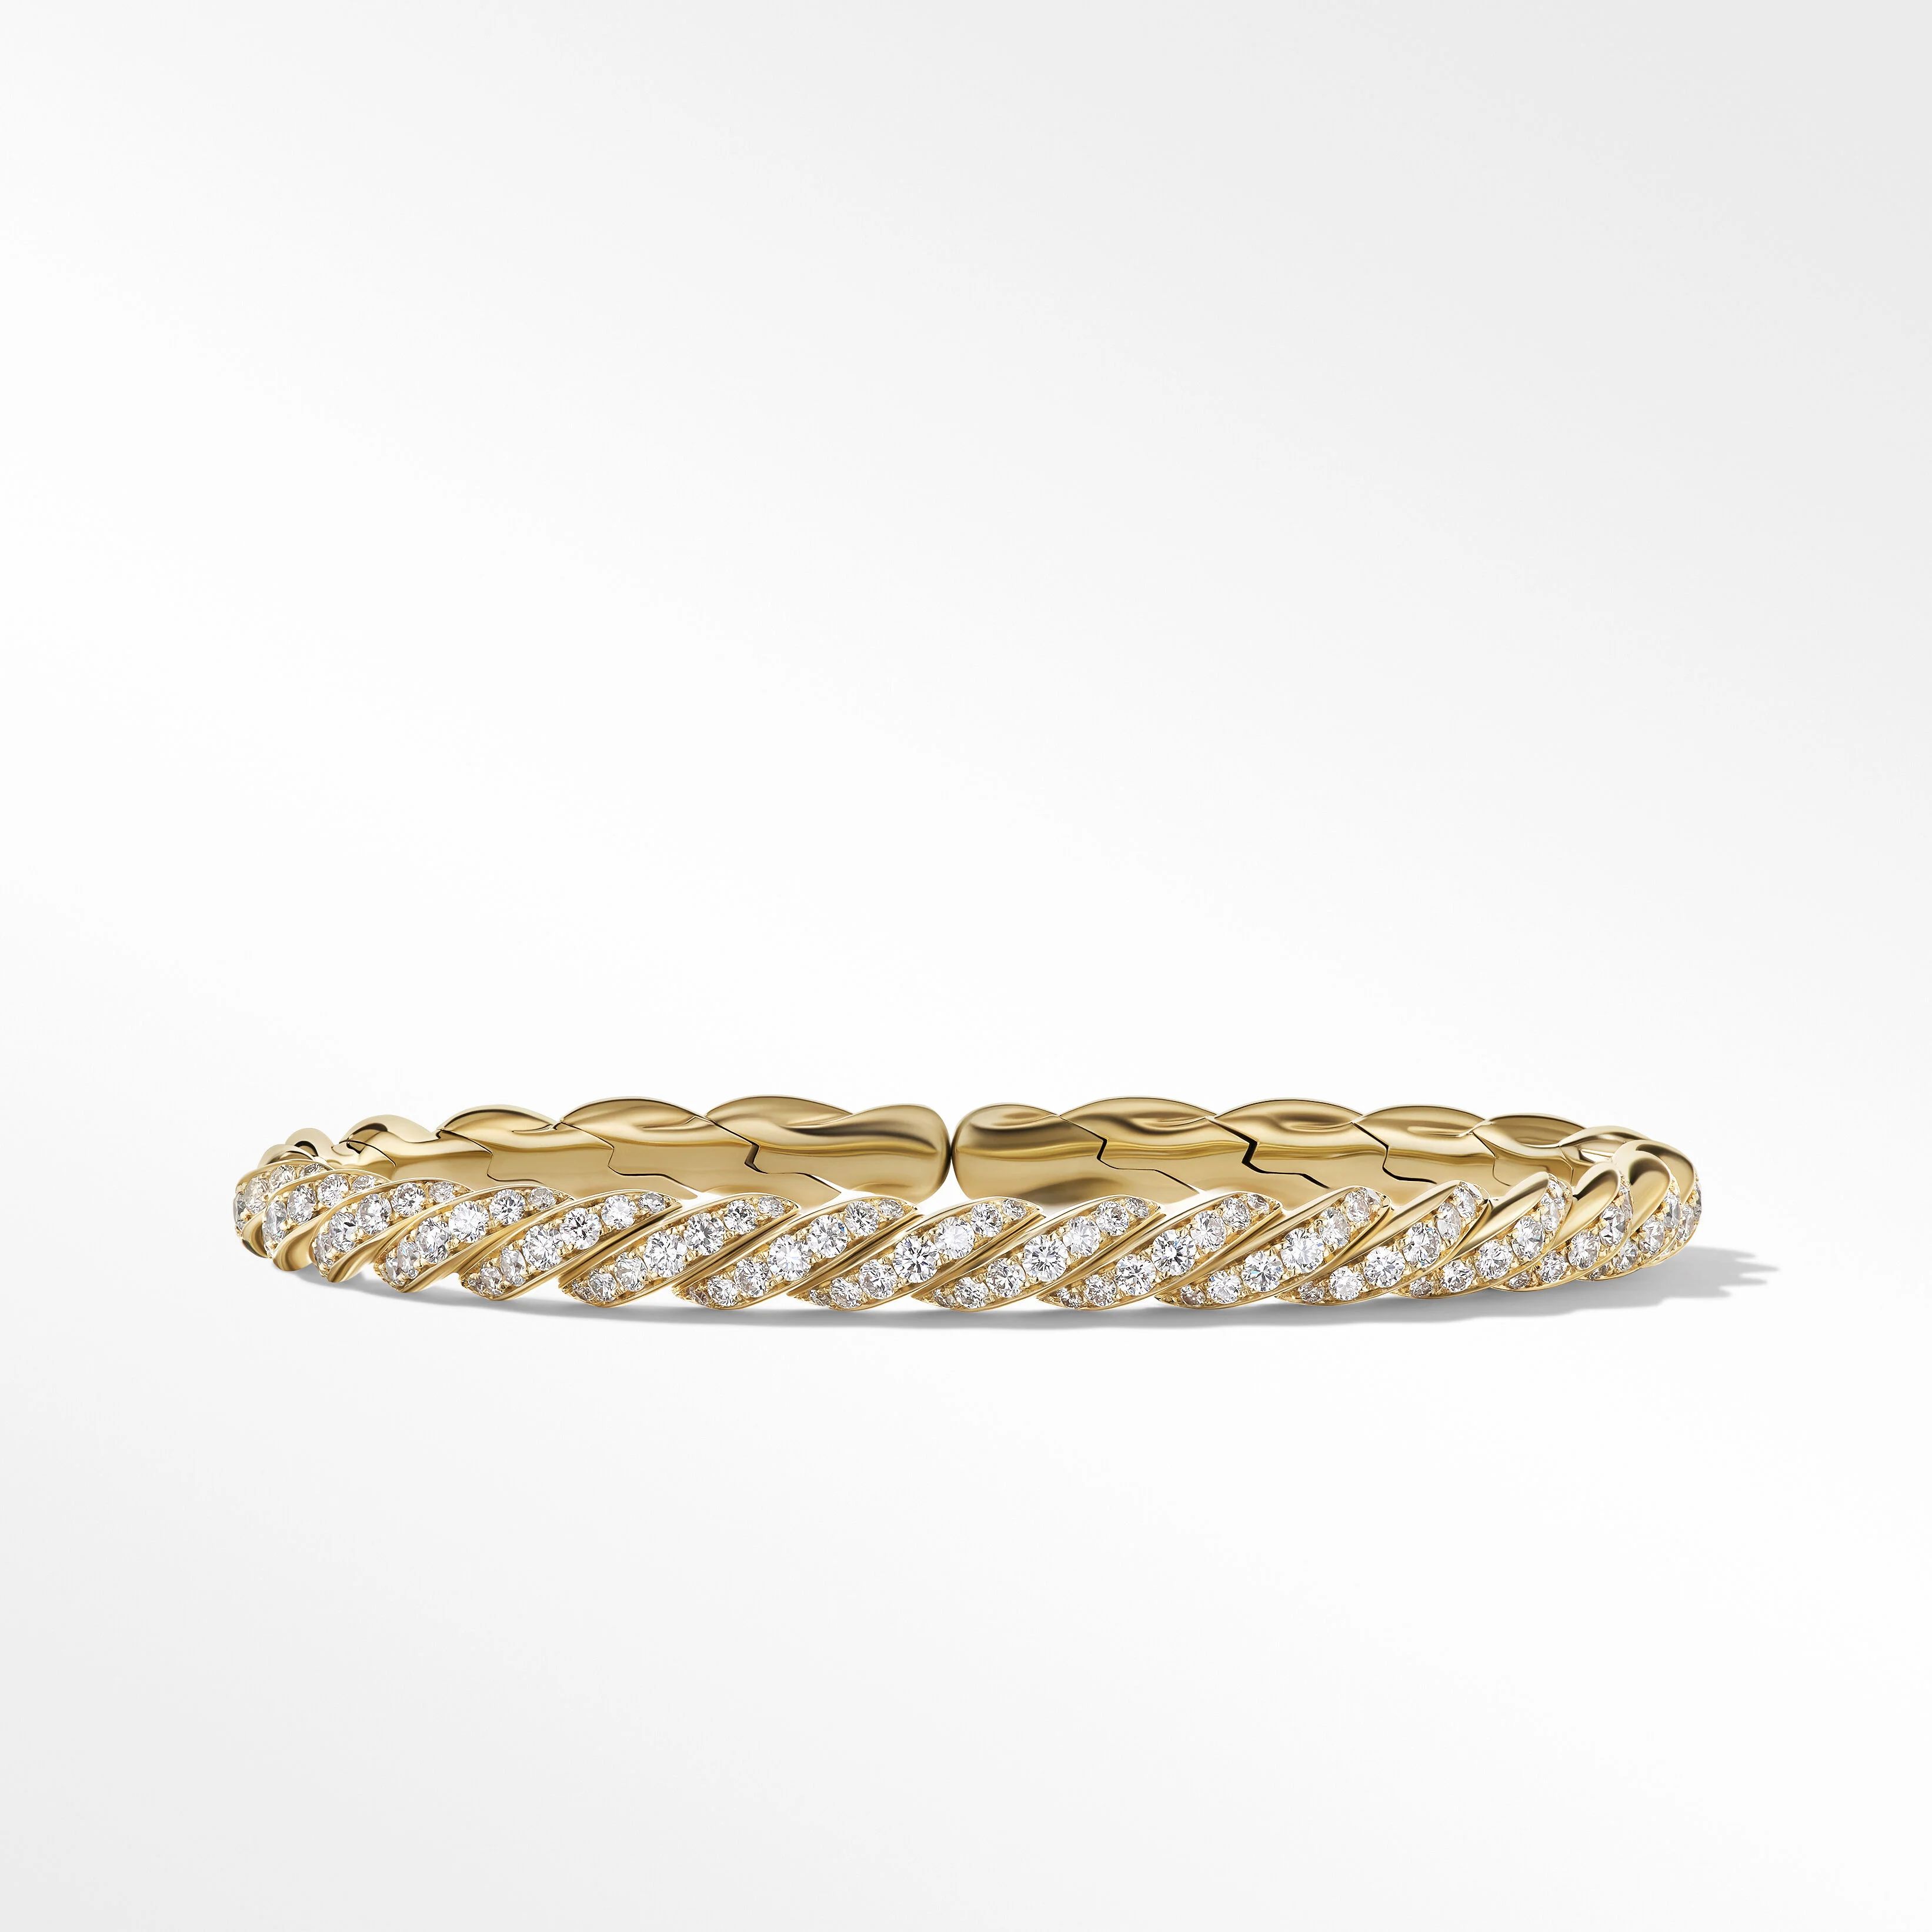 Pavéflex Bracelet in 18K Yellow Gold with Diamonds | David Yurman